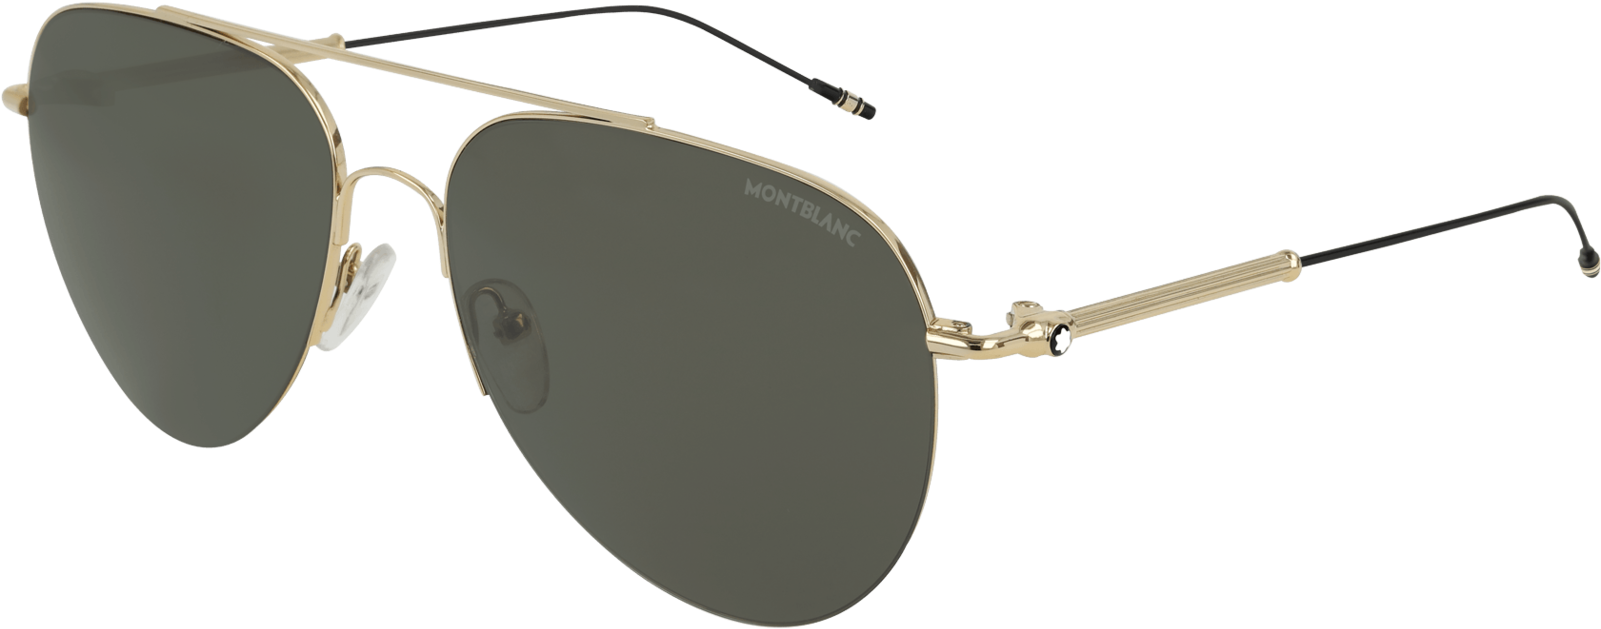 255147 Ecom Retina 01 Montblanc Sunglasses